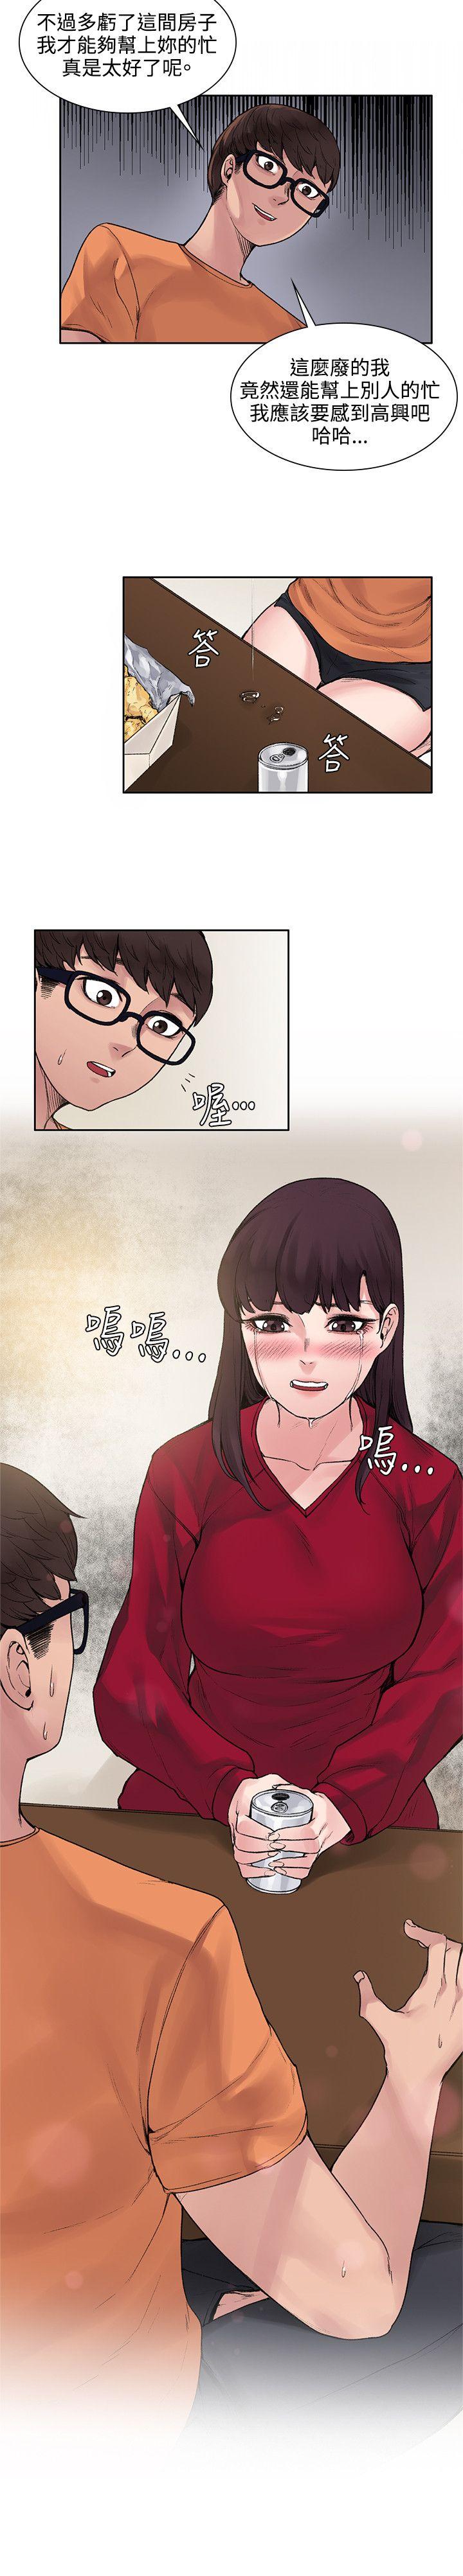 韩国污漫画 那裡的香氣 第14话 4